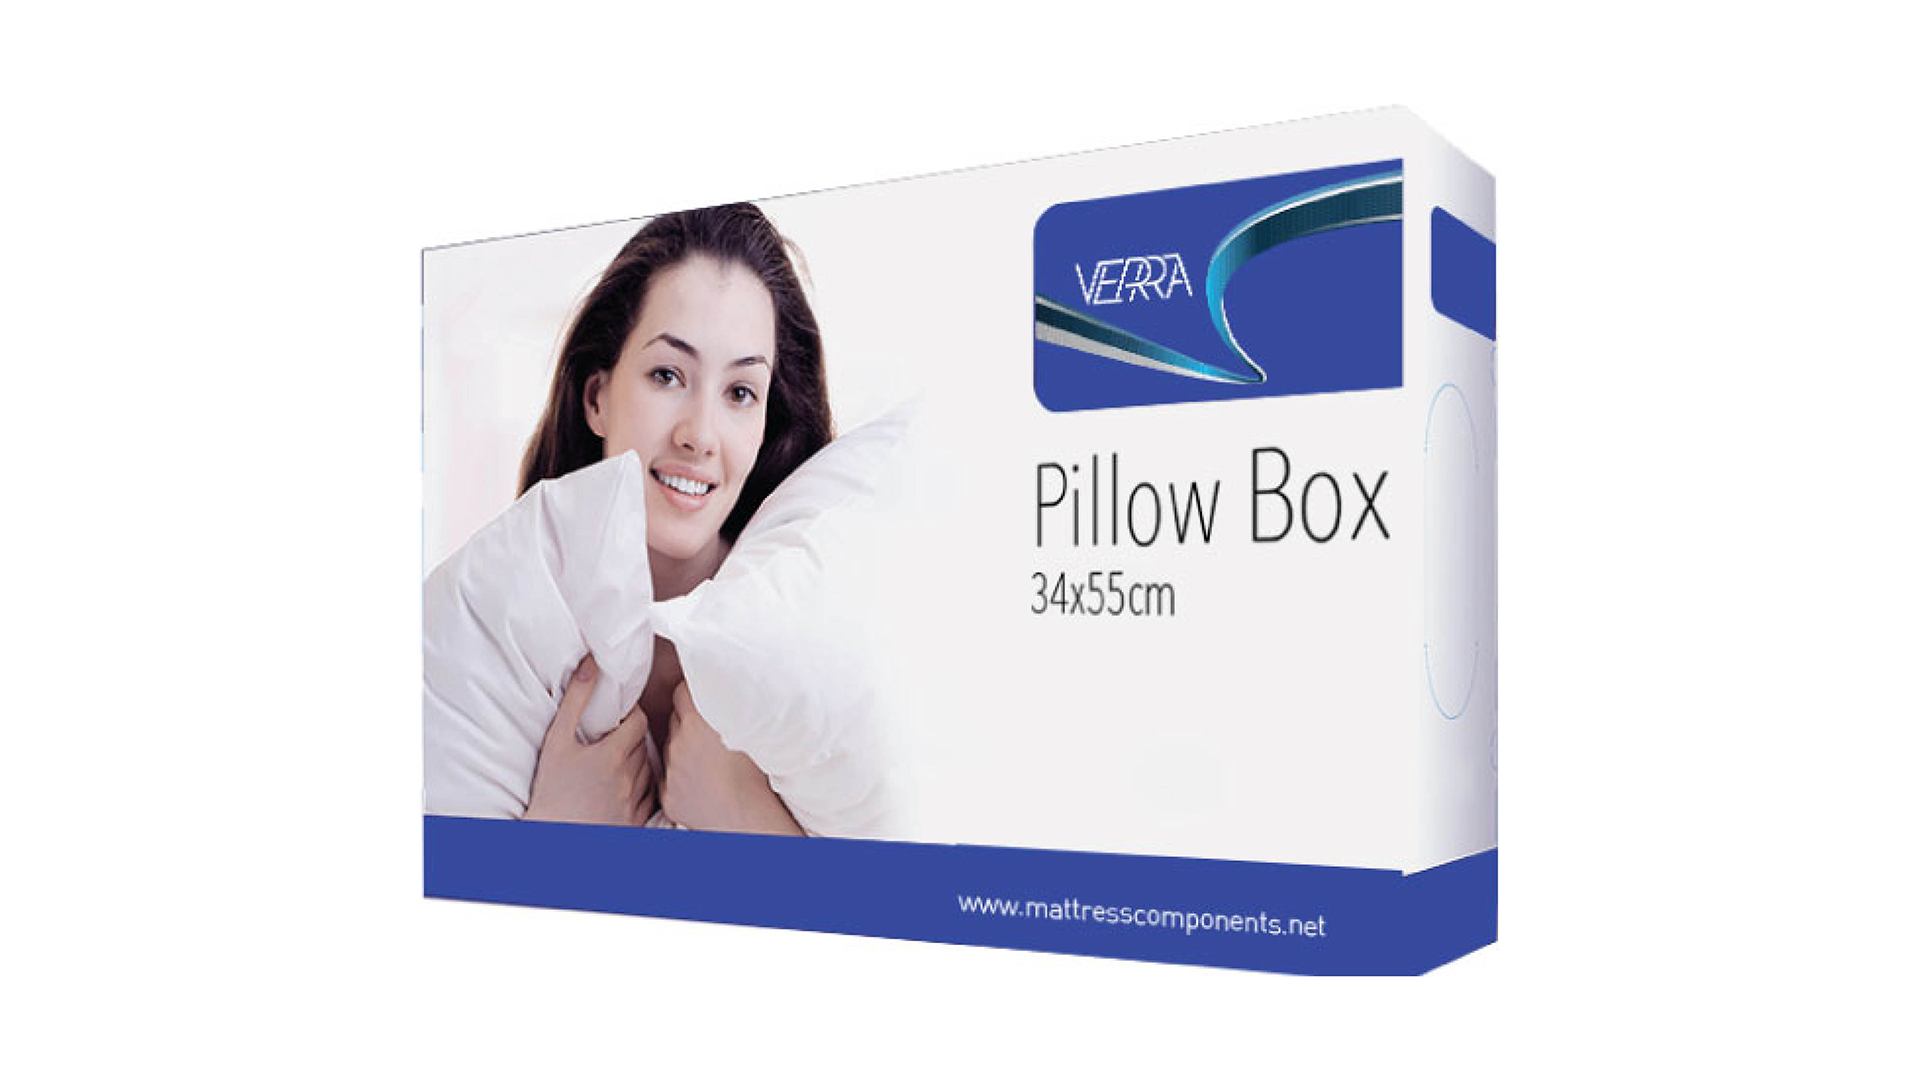 Pillow Box VB20